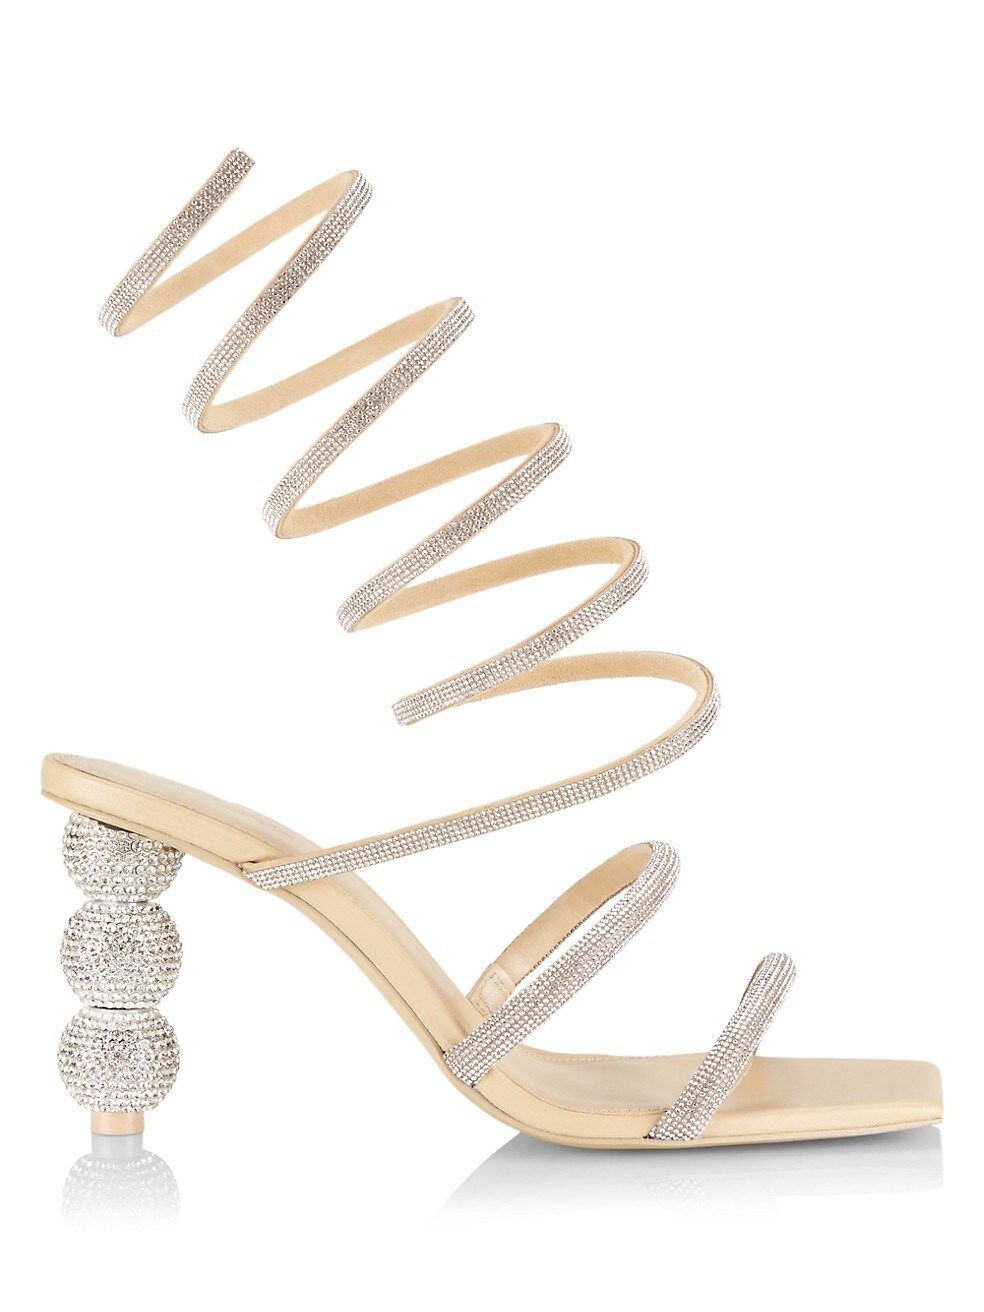 Cult Gaia Lislie Crystal-Embellished Wrap Sandals | Saks Fifth Avenue